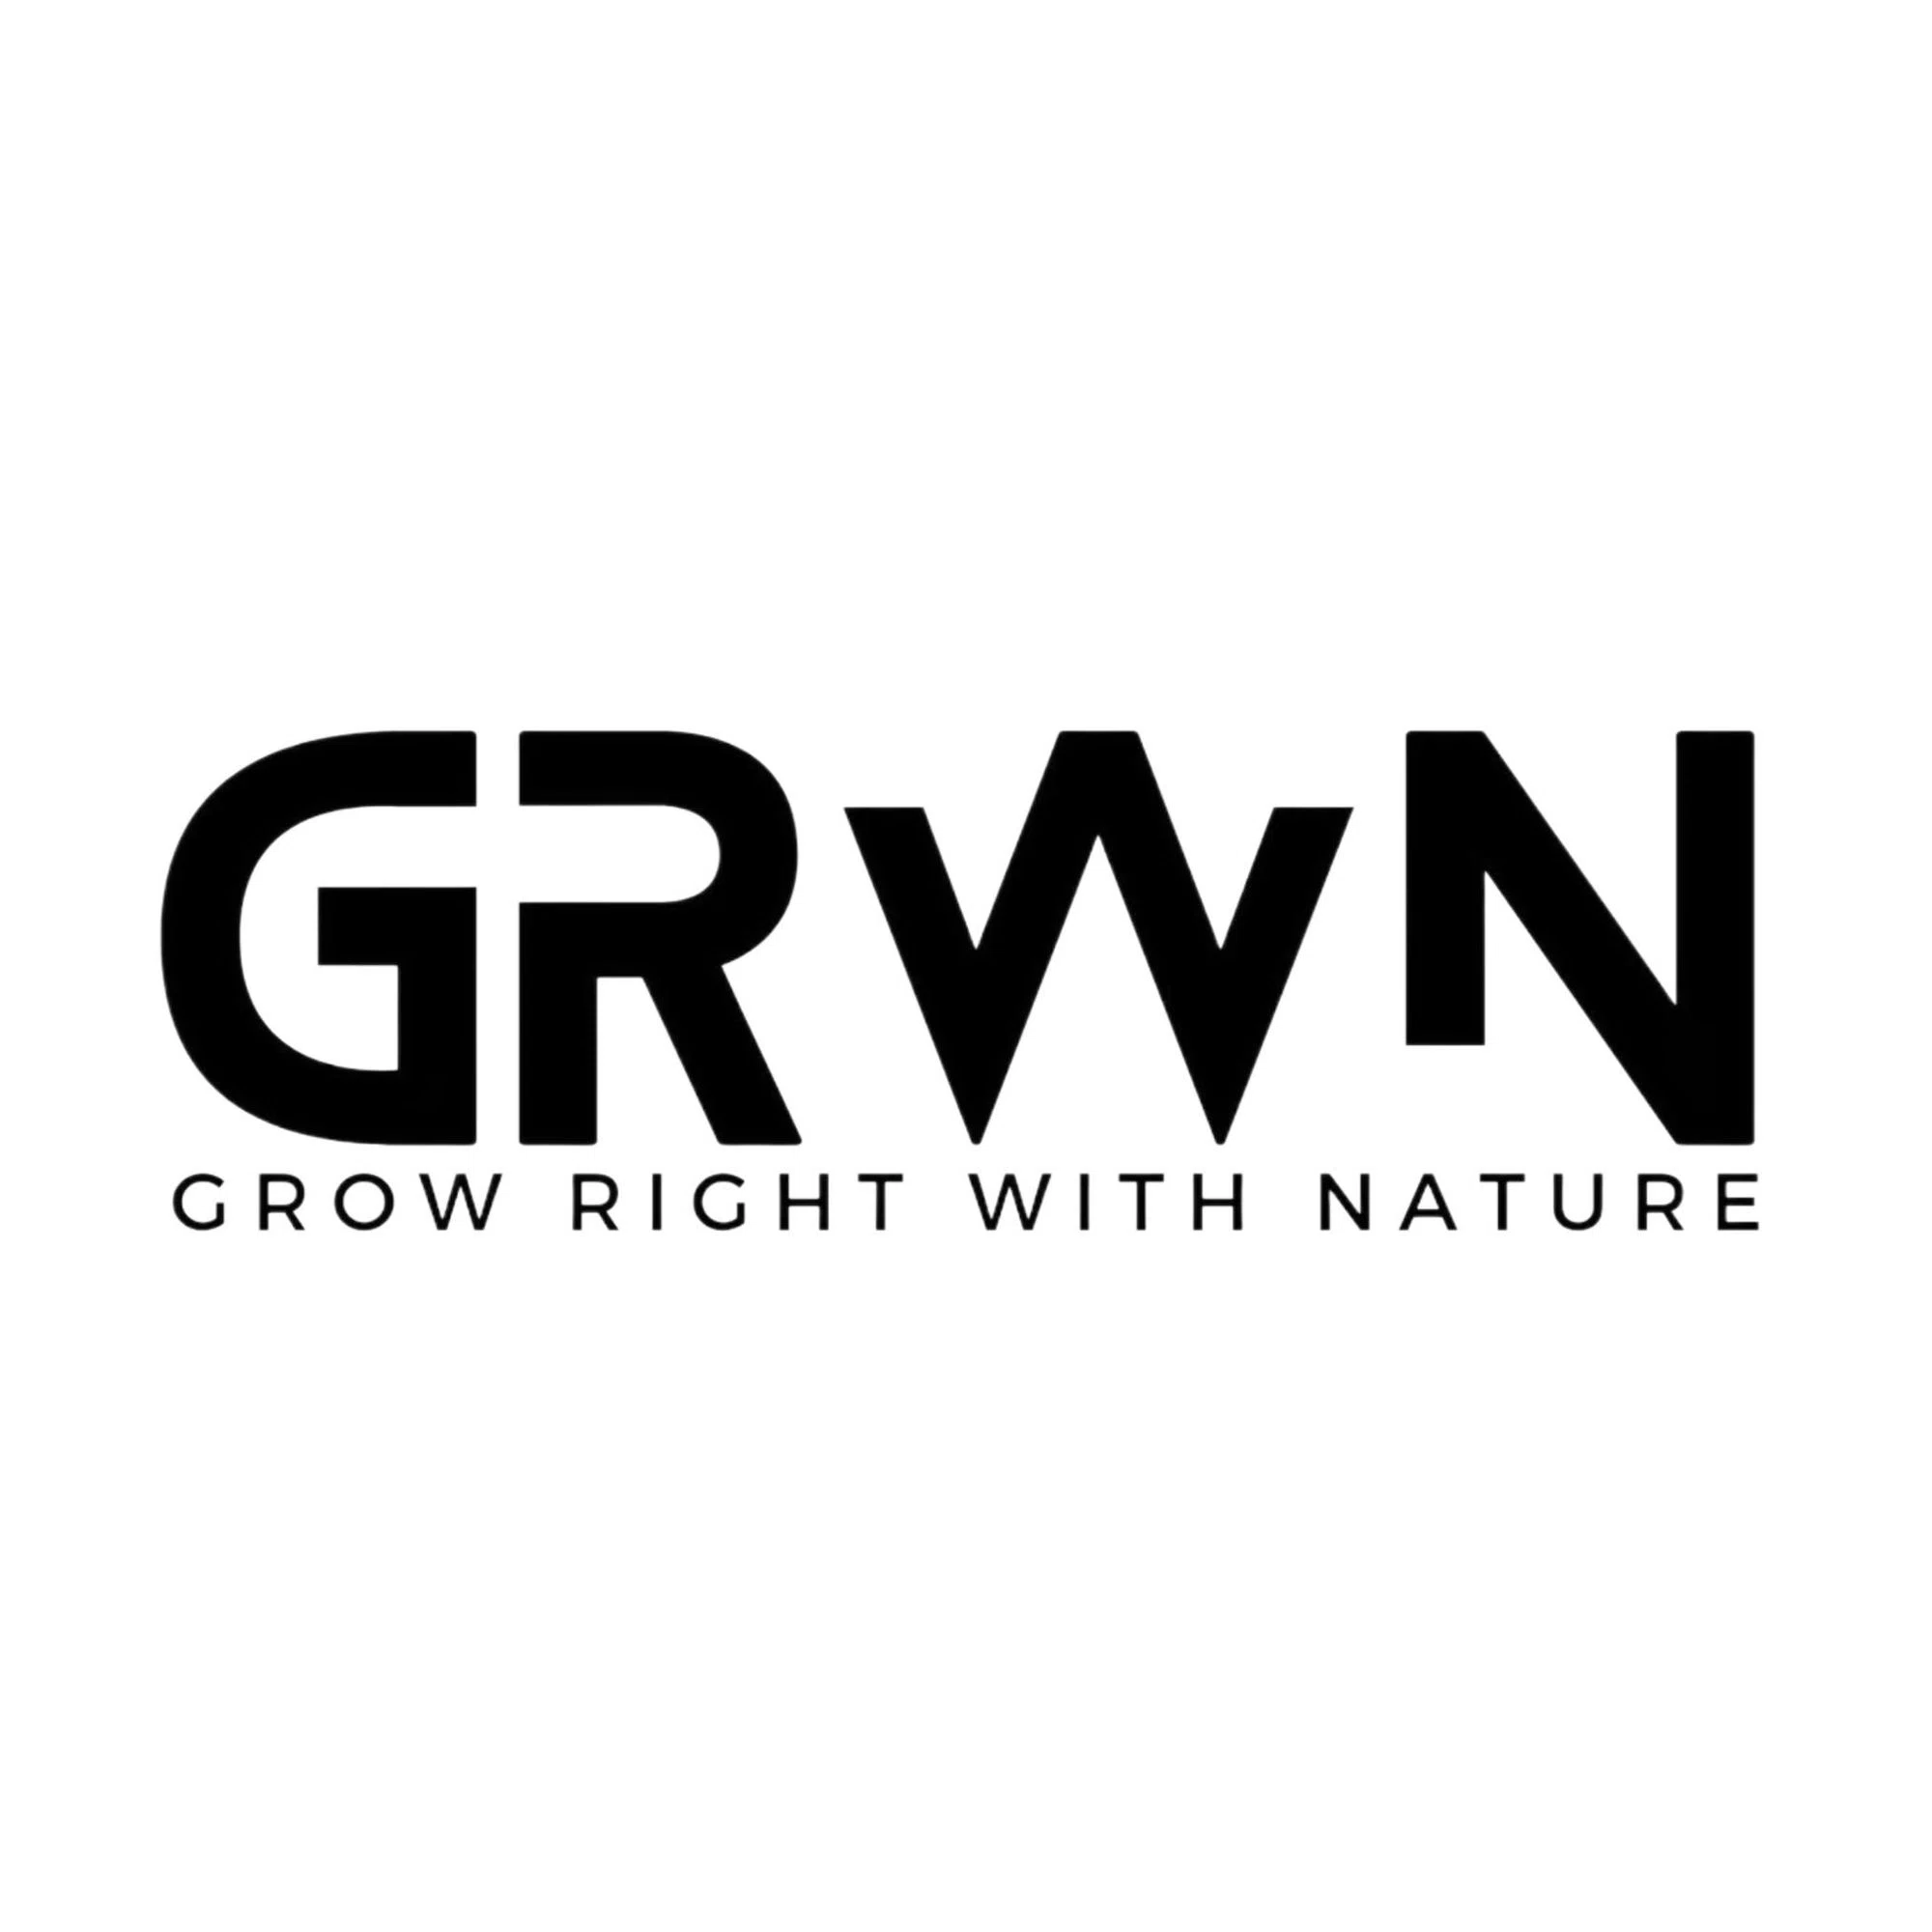 GRWN Seeds